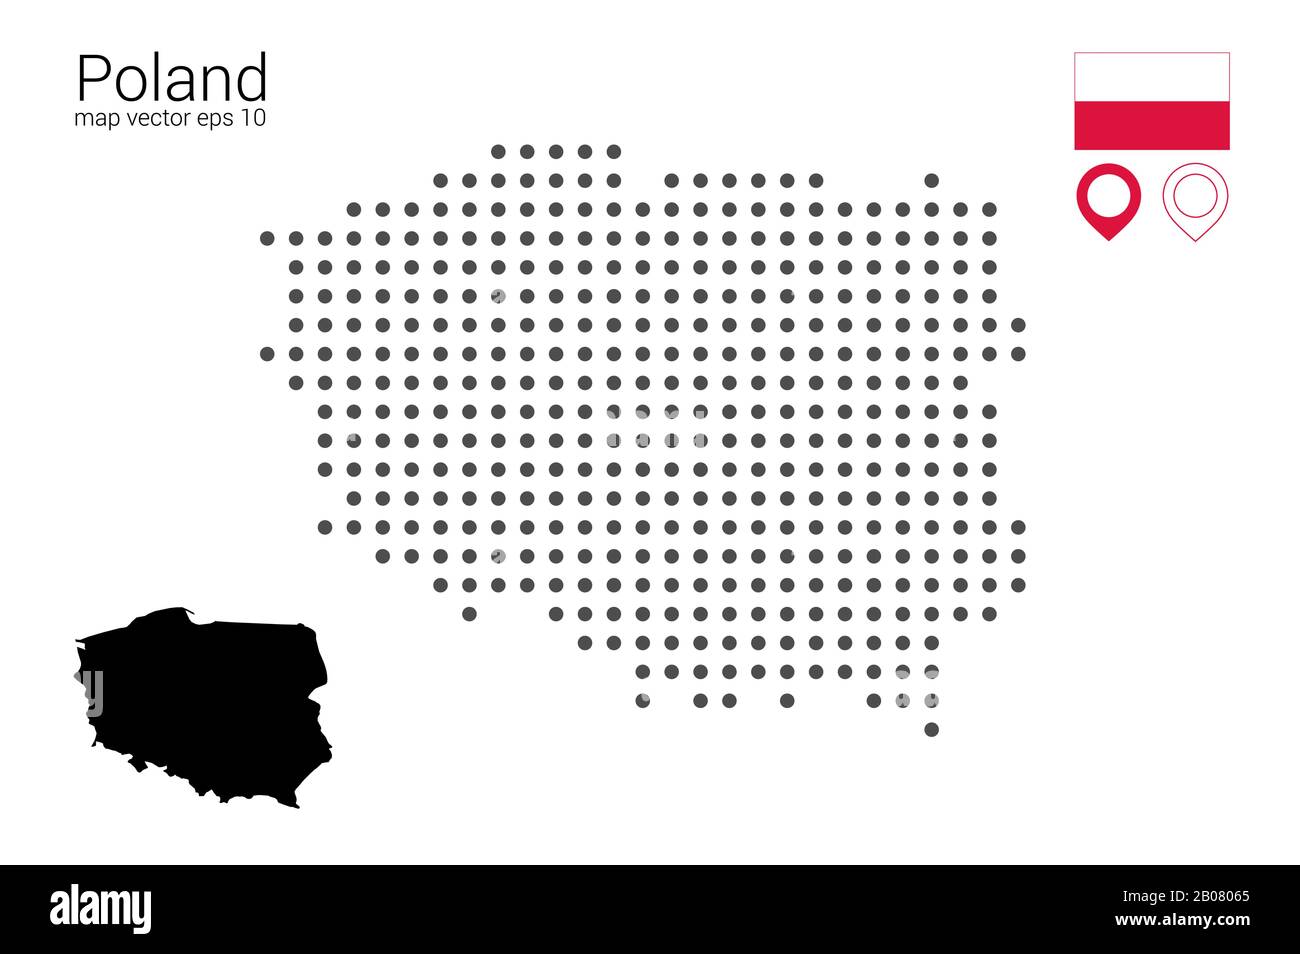 Mapa de Polonia, dibujo vectorial, punteado con bandera y marcador de mapa. Ilustración para diseño, web, infografía, impresión, aislada sobre un soporte blanco extraíble Ilustración del Vector